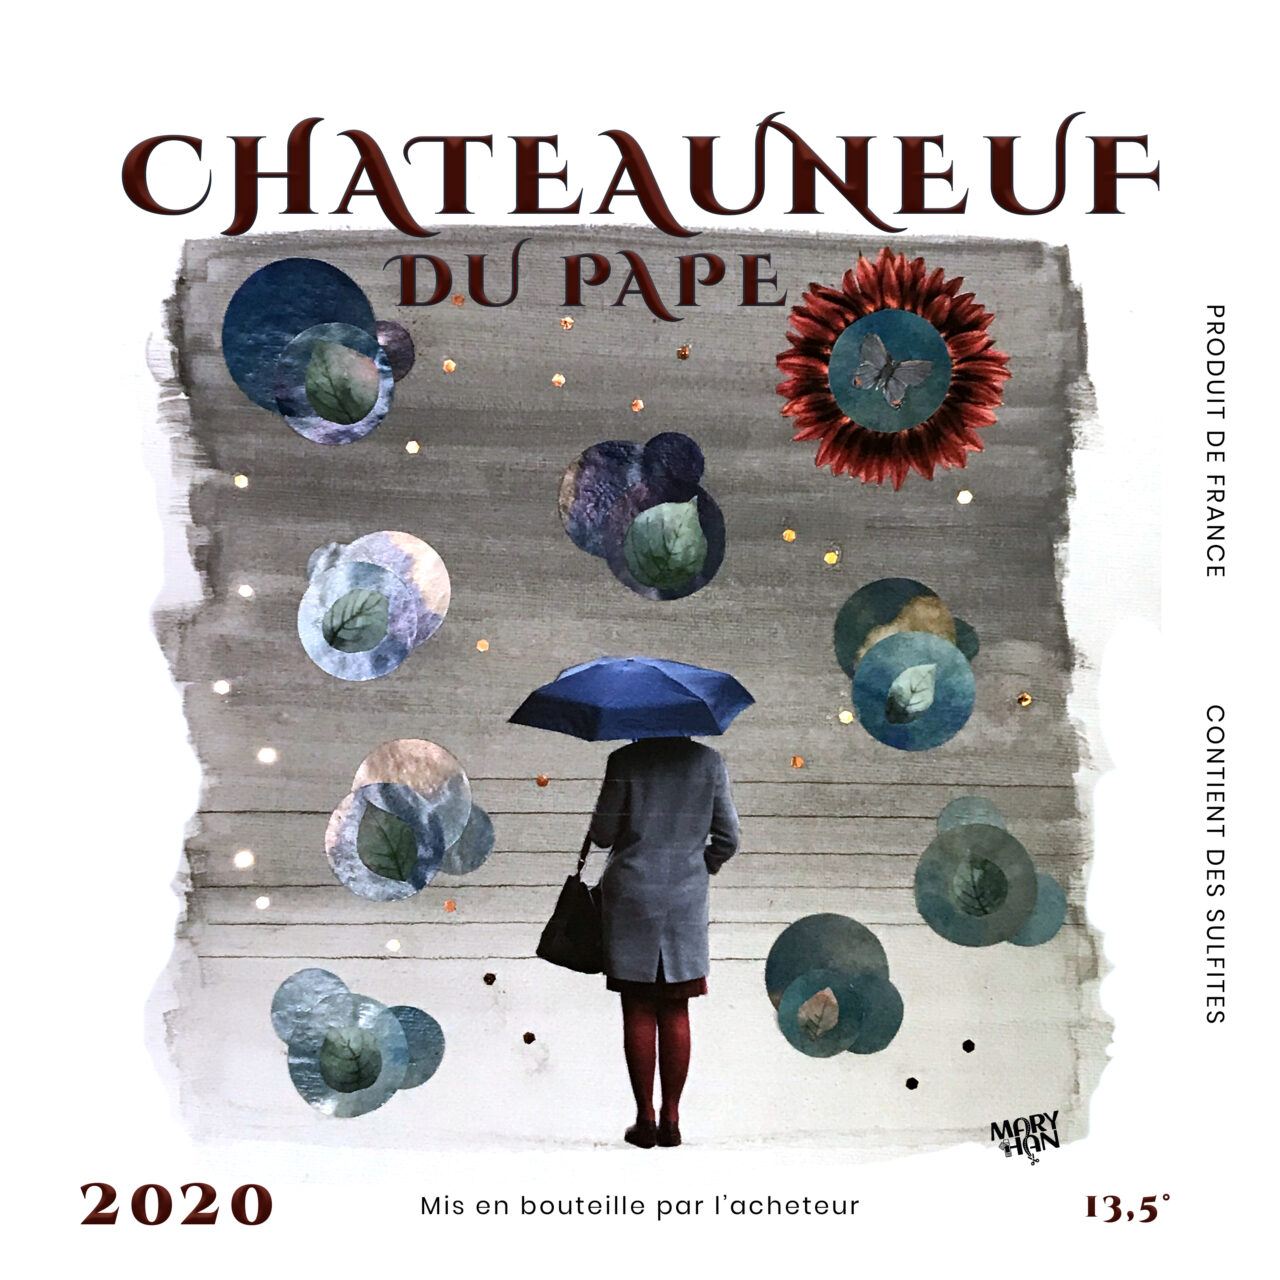 Etiquette de bouteille de vin Châteauneuf du pape